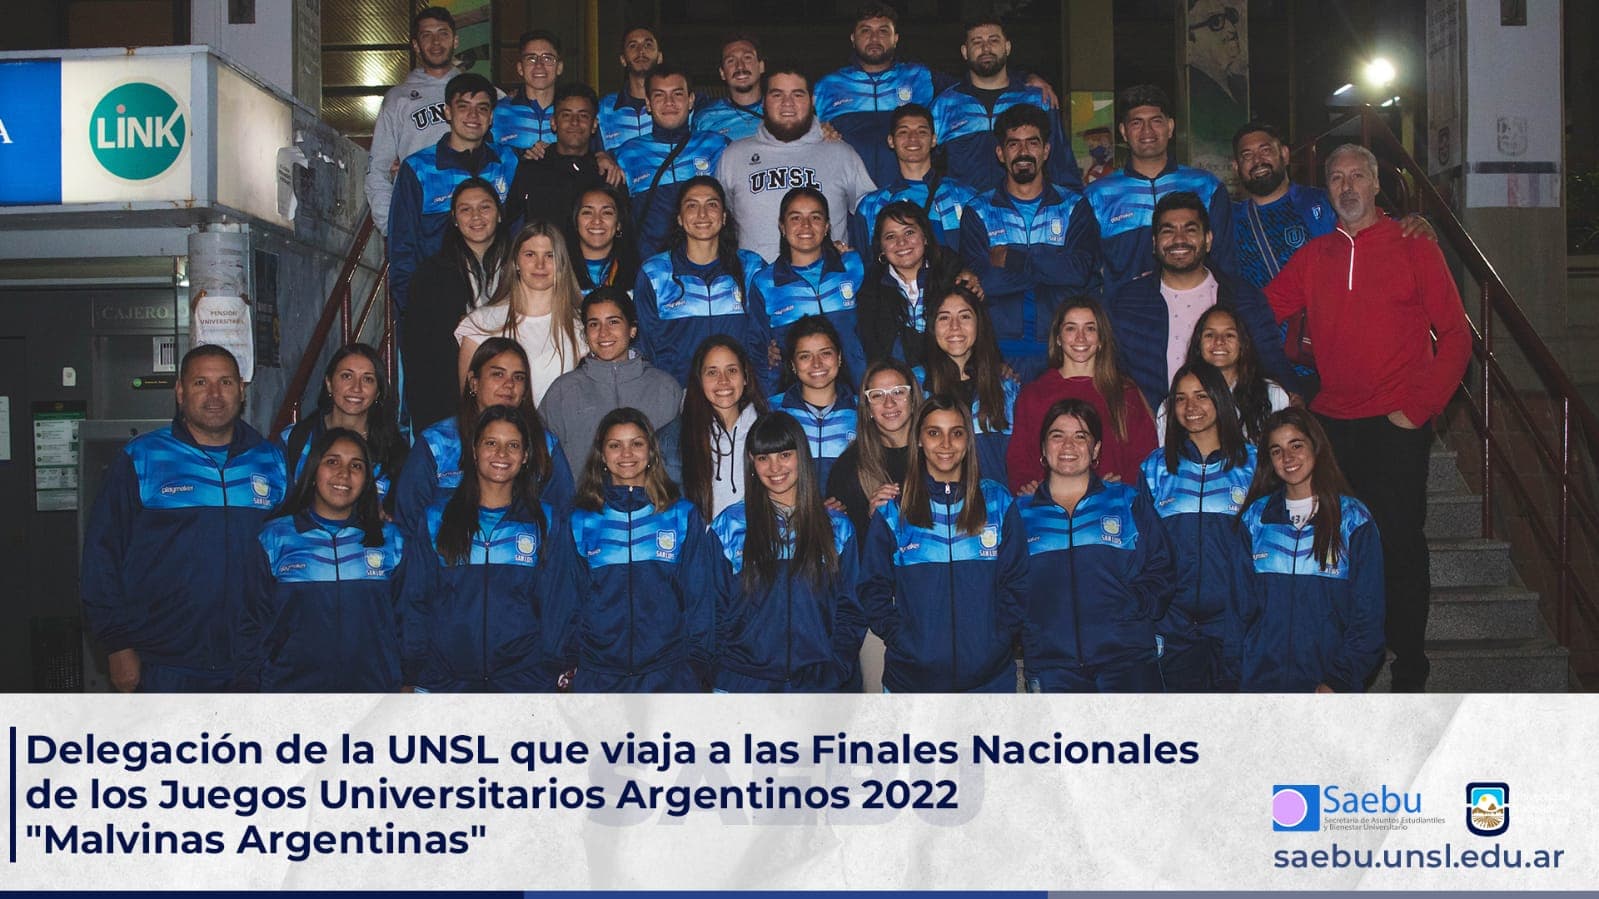 Finales Nacionales de los Juegos Universitarios Argentinos